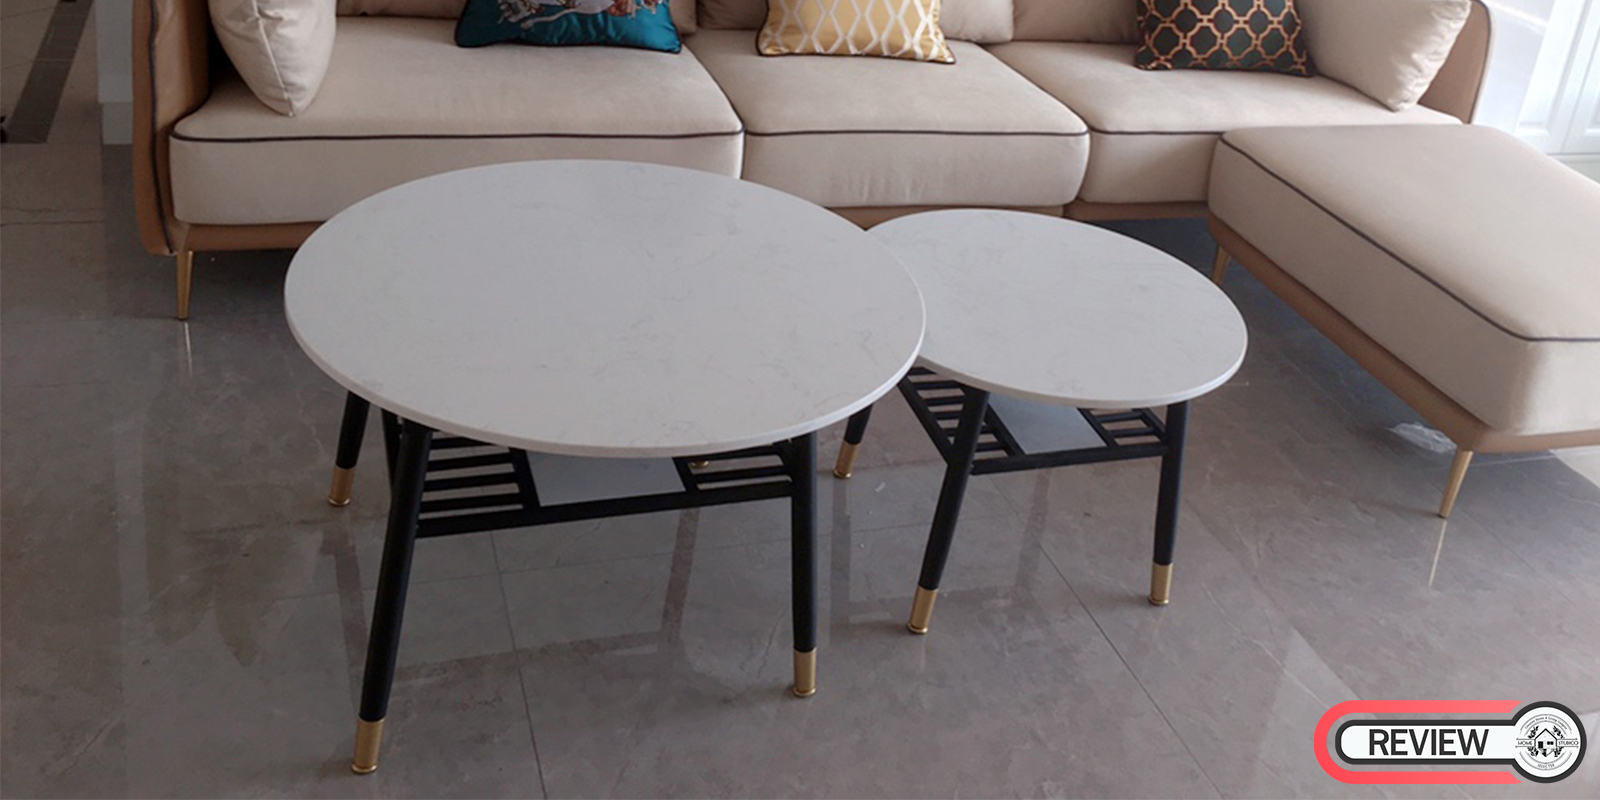 รีวิว ชุดโต๊ะกลางท็อปหินอ่อนวงกลม - Premium Coffee Table Set II